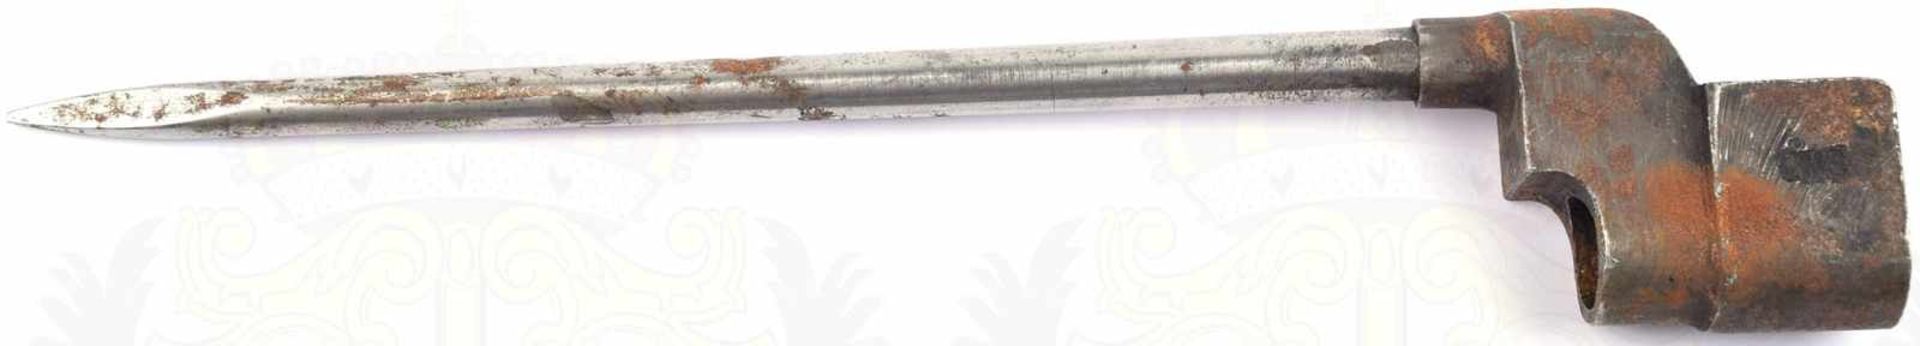 SPIKE BAJONETT MK II, Stahl, bez. „P.S.K.“, undeutl. Hersteller, um 1941, ges. L. 25cm, flugrostig